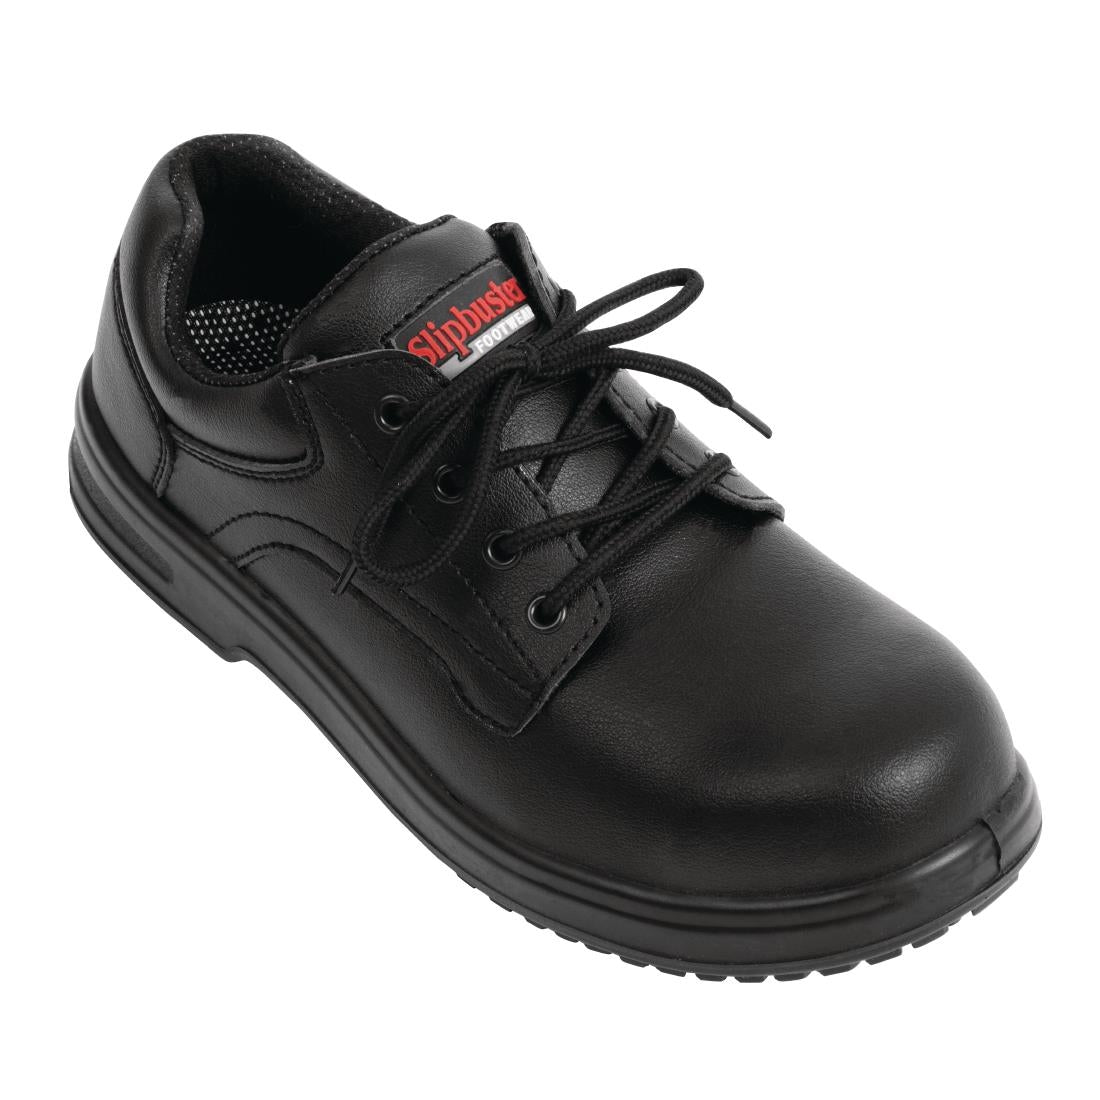 BB498-41 Slipbuster Basic Shoes Slip Resistant Black 41 JD Catering Equipment Solutions Ltd